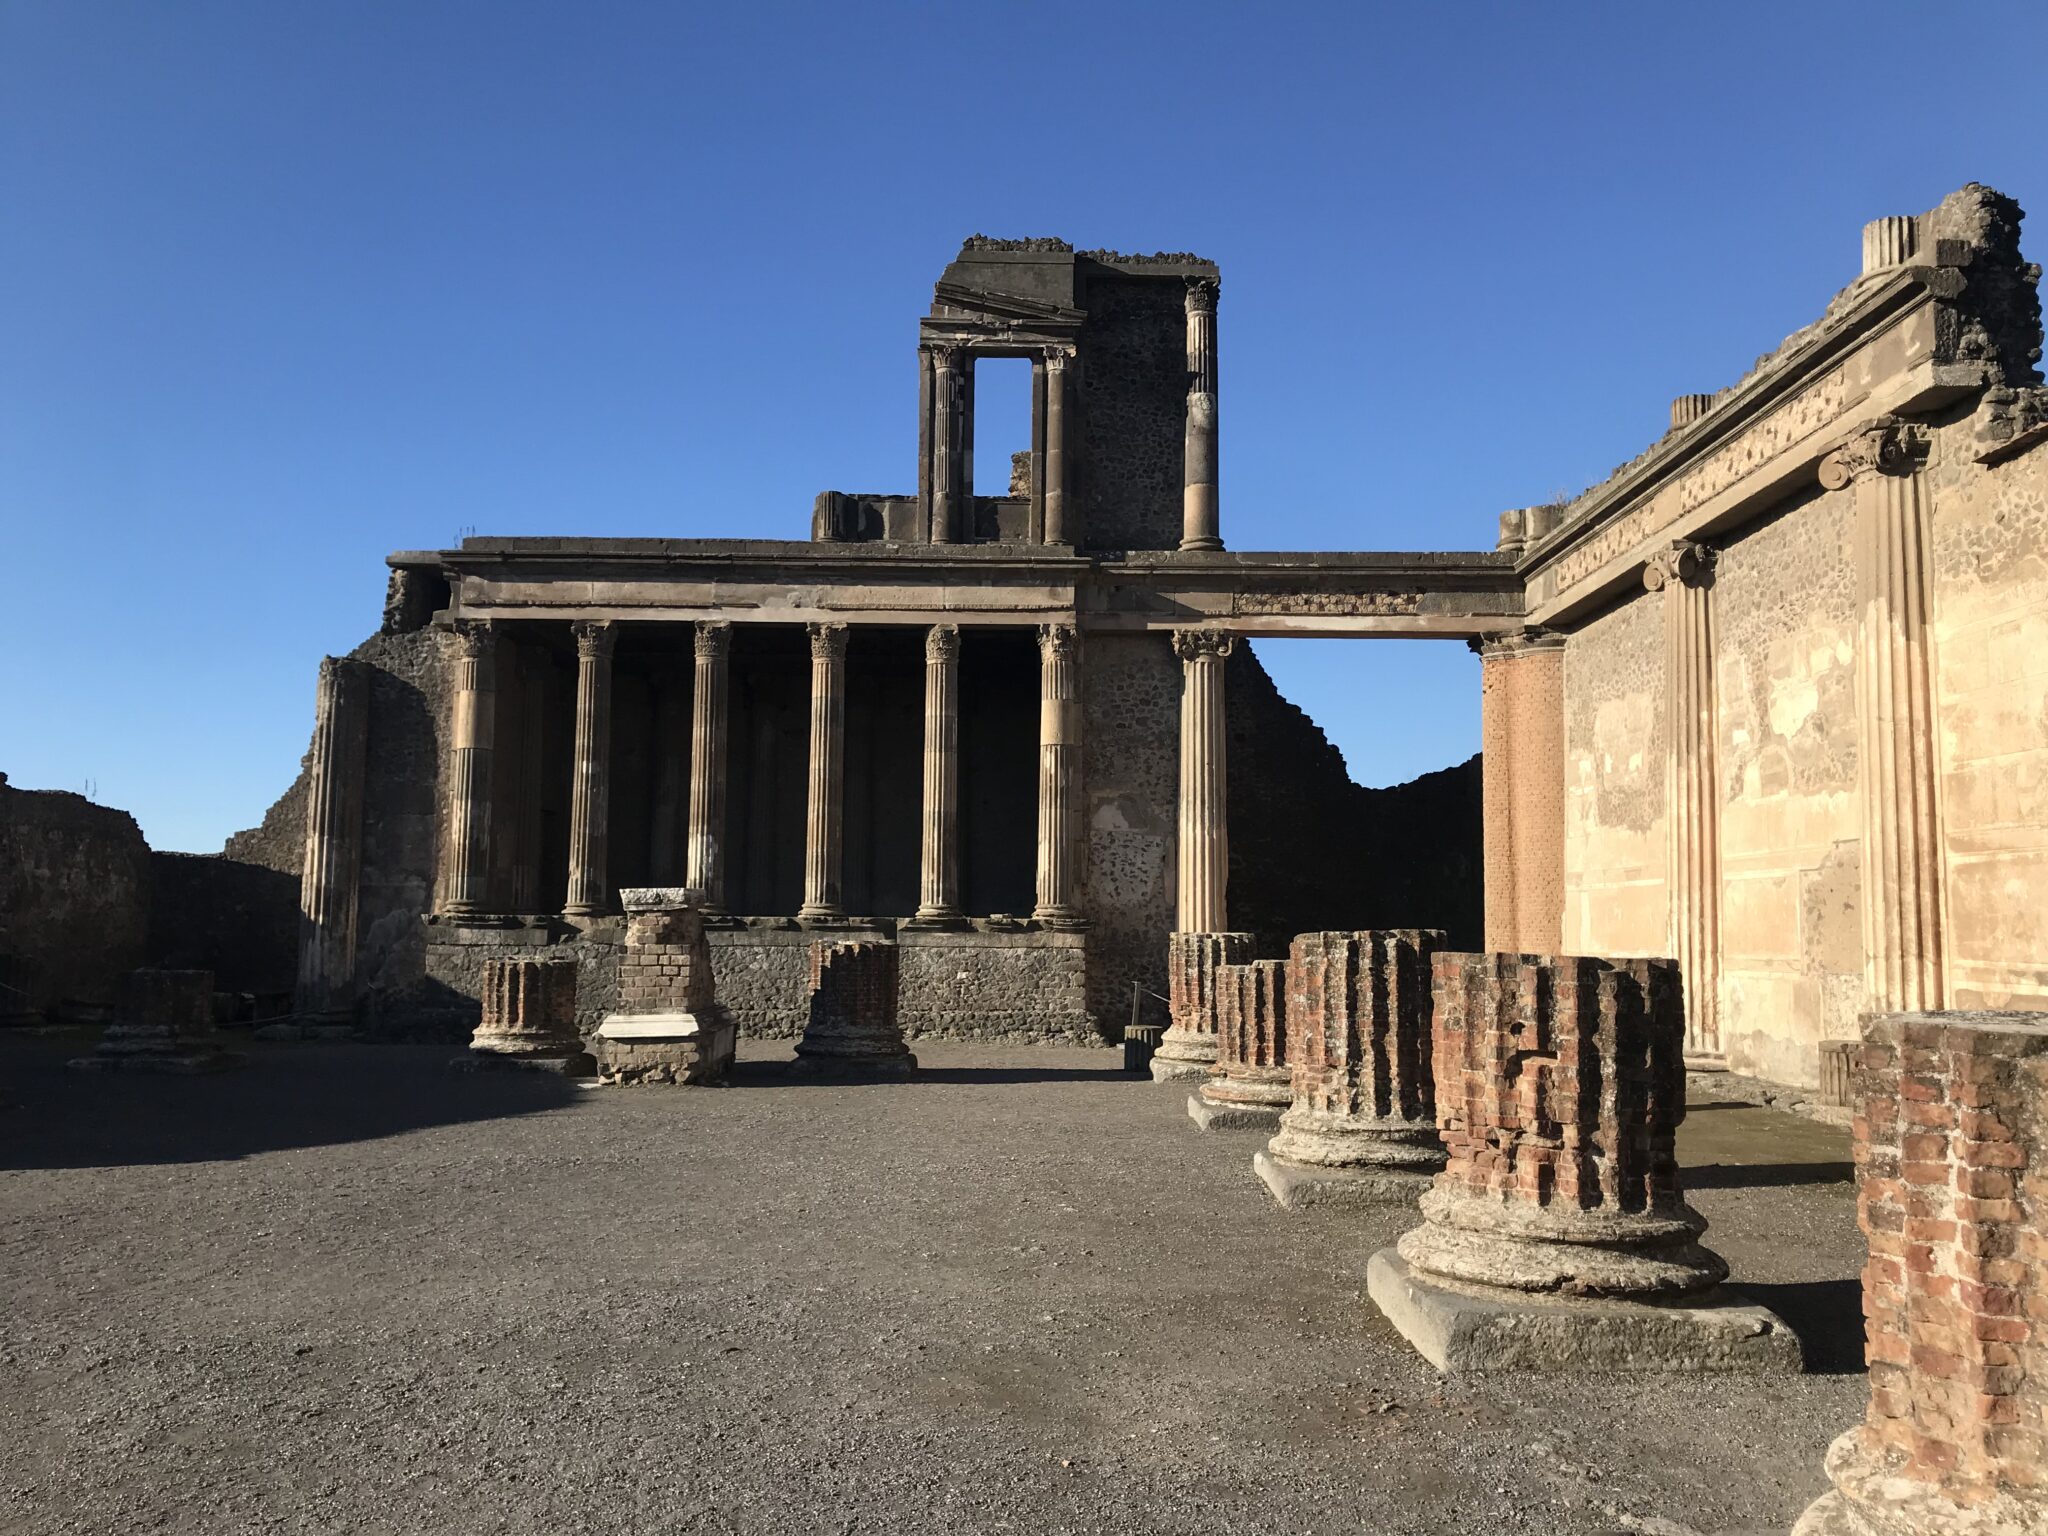 Pompeii columns in an open courtyard